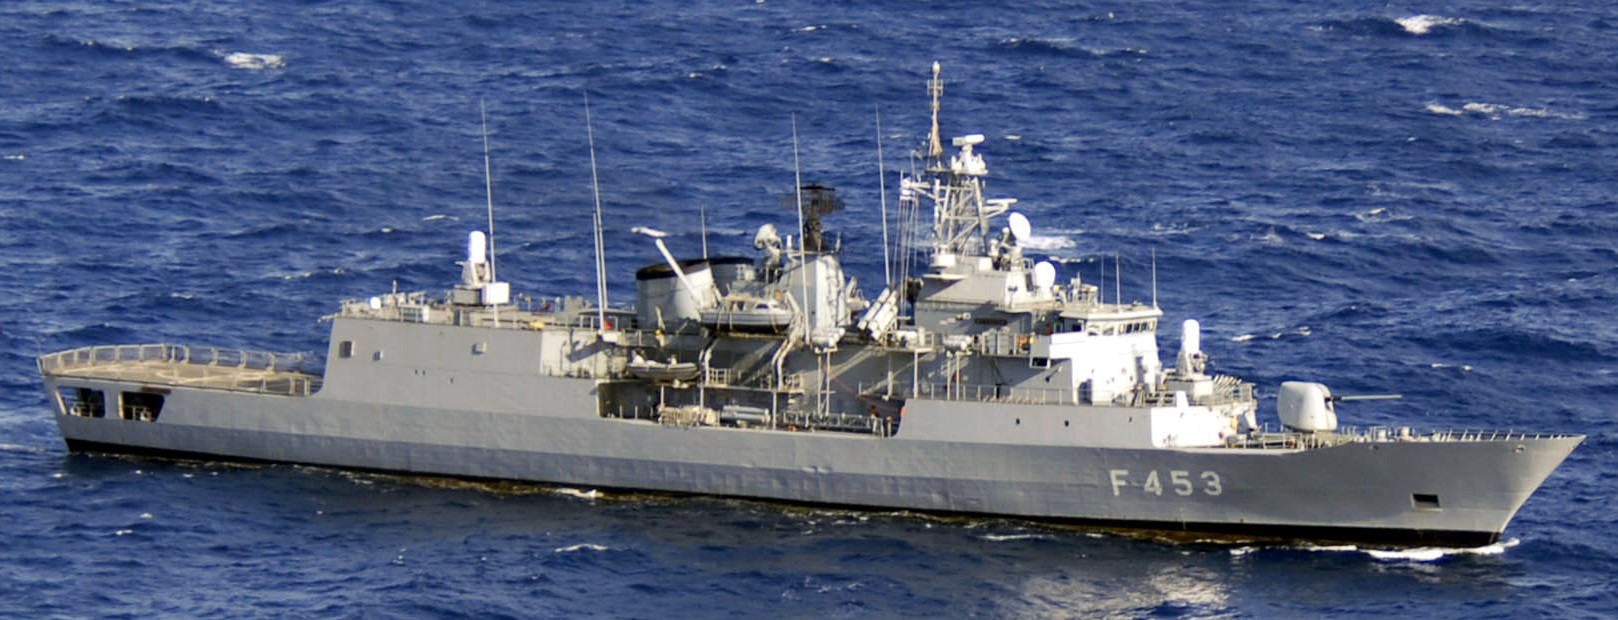 f 453 hs spetsai hydra class frigate meko-200hn hellenic navy greece 13